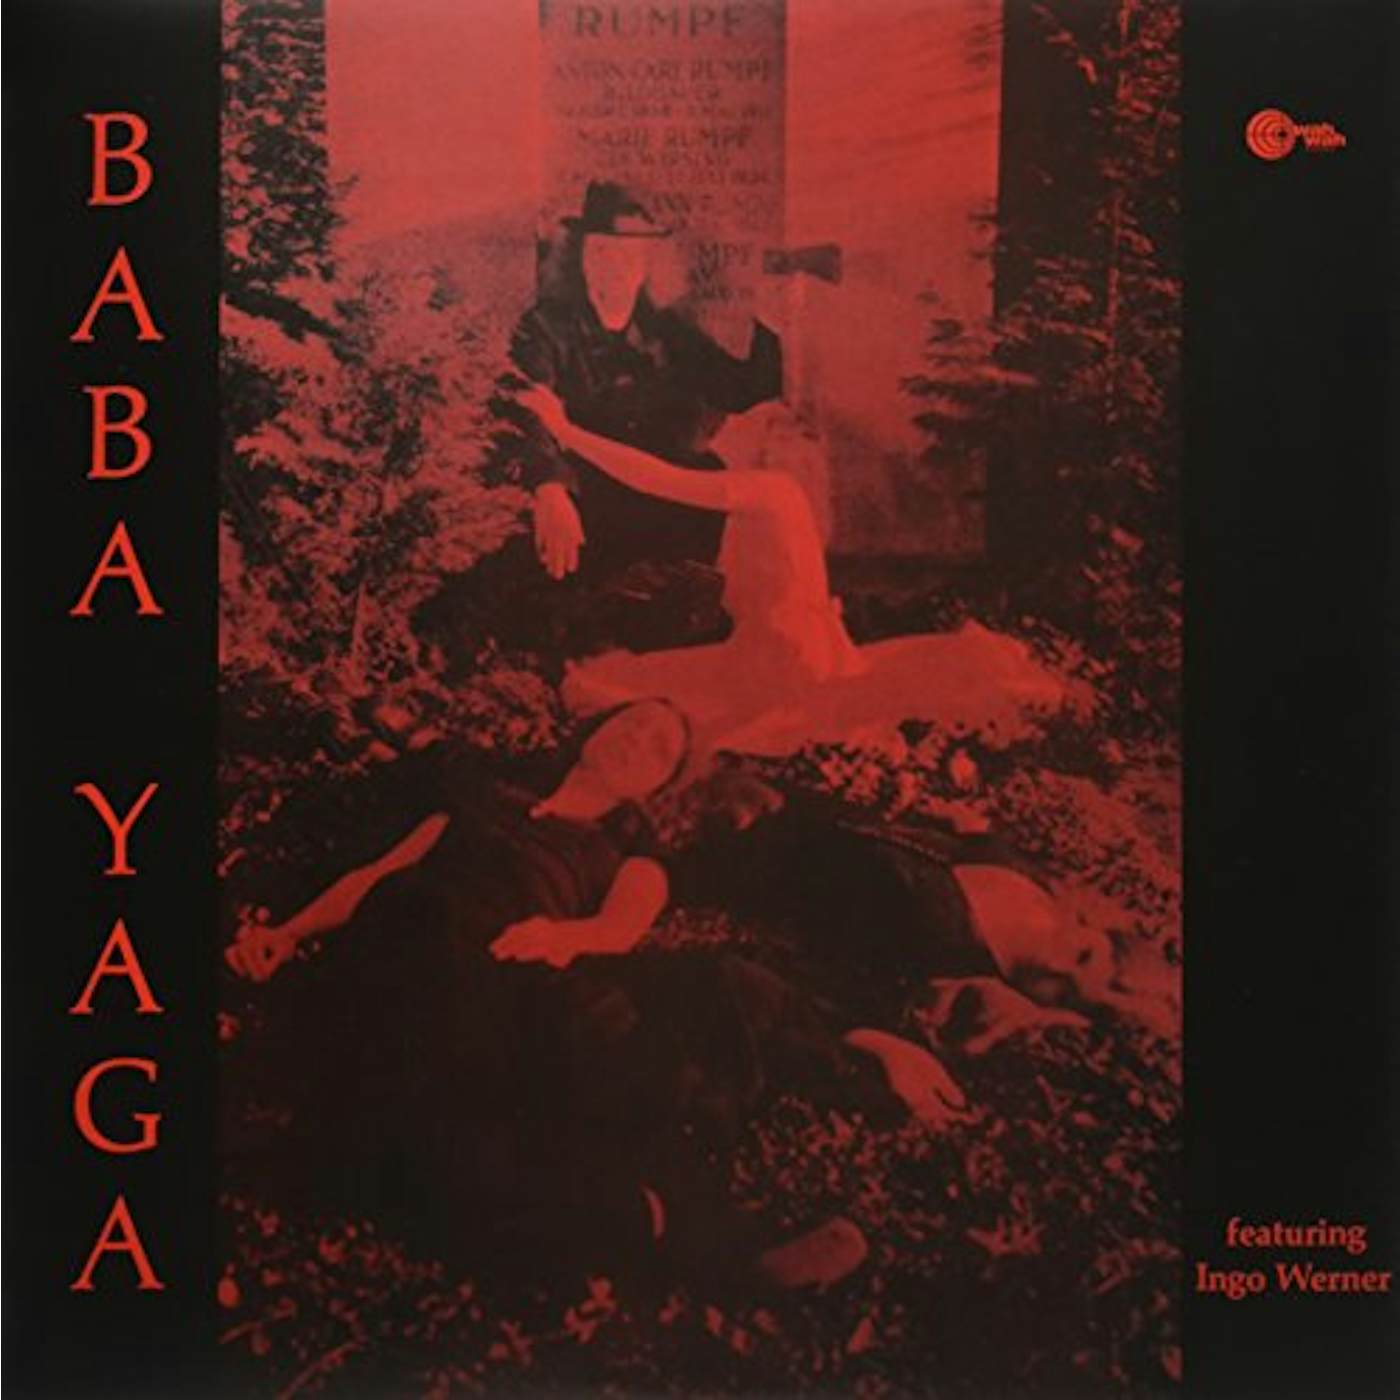 Baba Yaga FEATURING INGO WERNER Vinyl Record